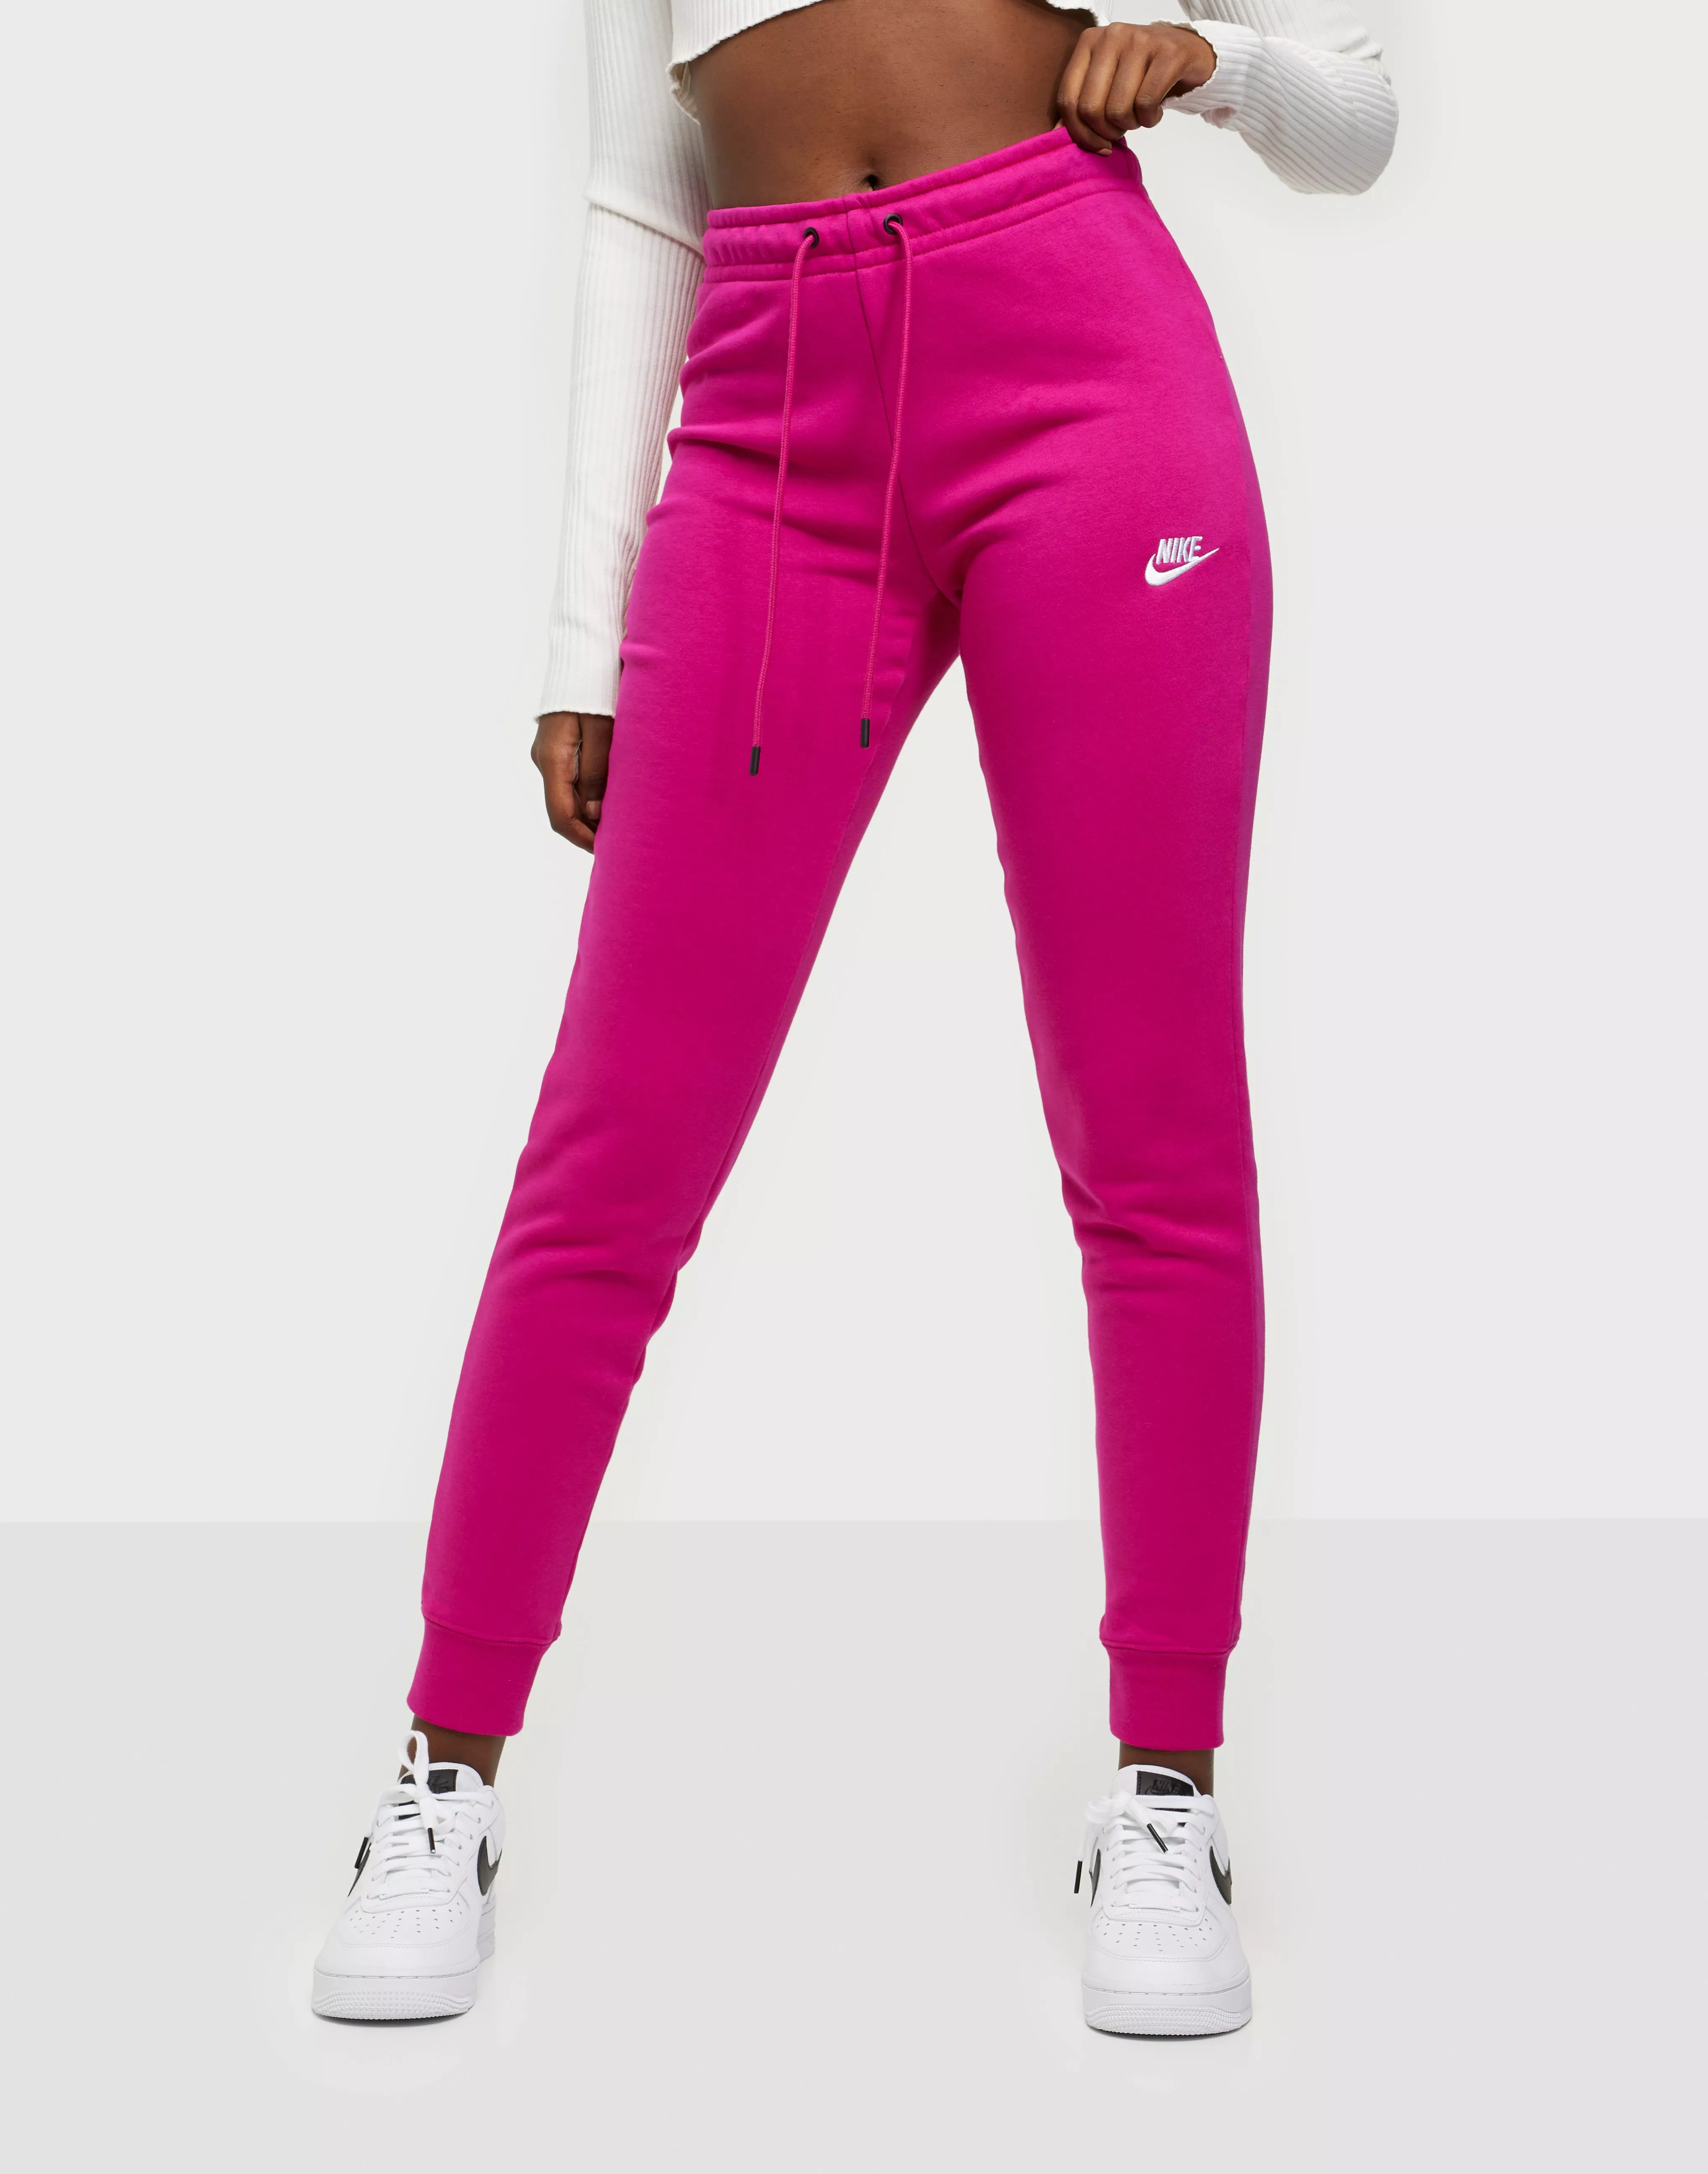 huh form hvorfor Buy Nike W NSW ESSNTL PANT TIGHT FLC - Pink | Nelly.com